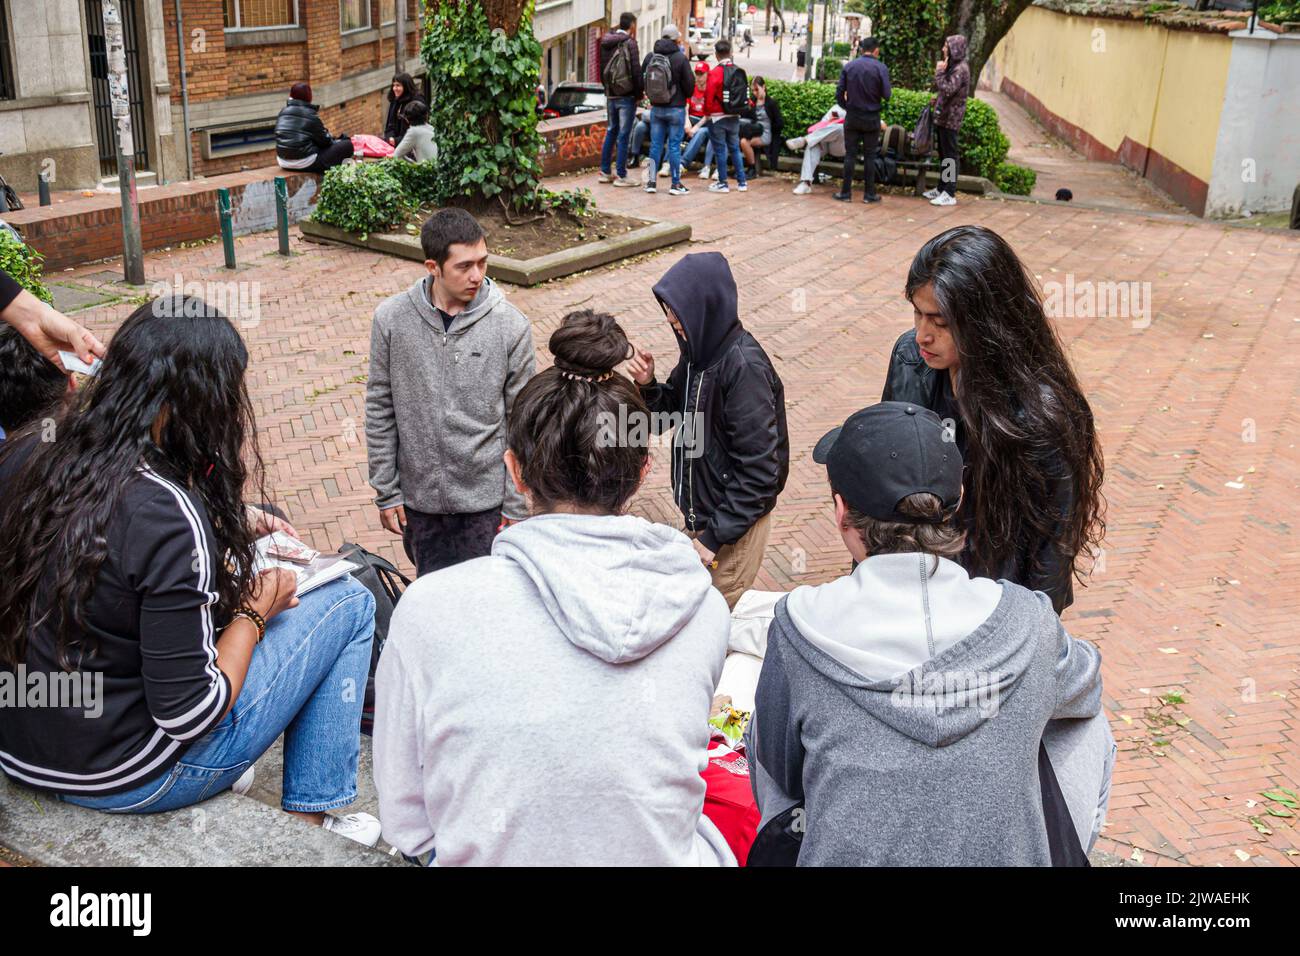 Bogota Colombia, la Candelaria Centro Historico centro storico centro storico centro storico Egipto Universidad de los Andes studenti, teen teens tee Foto Stock